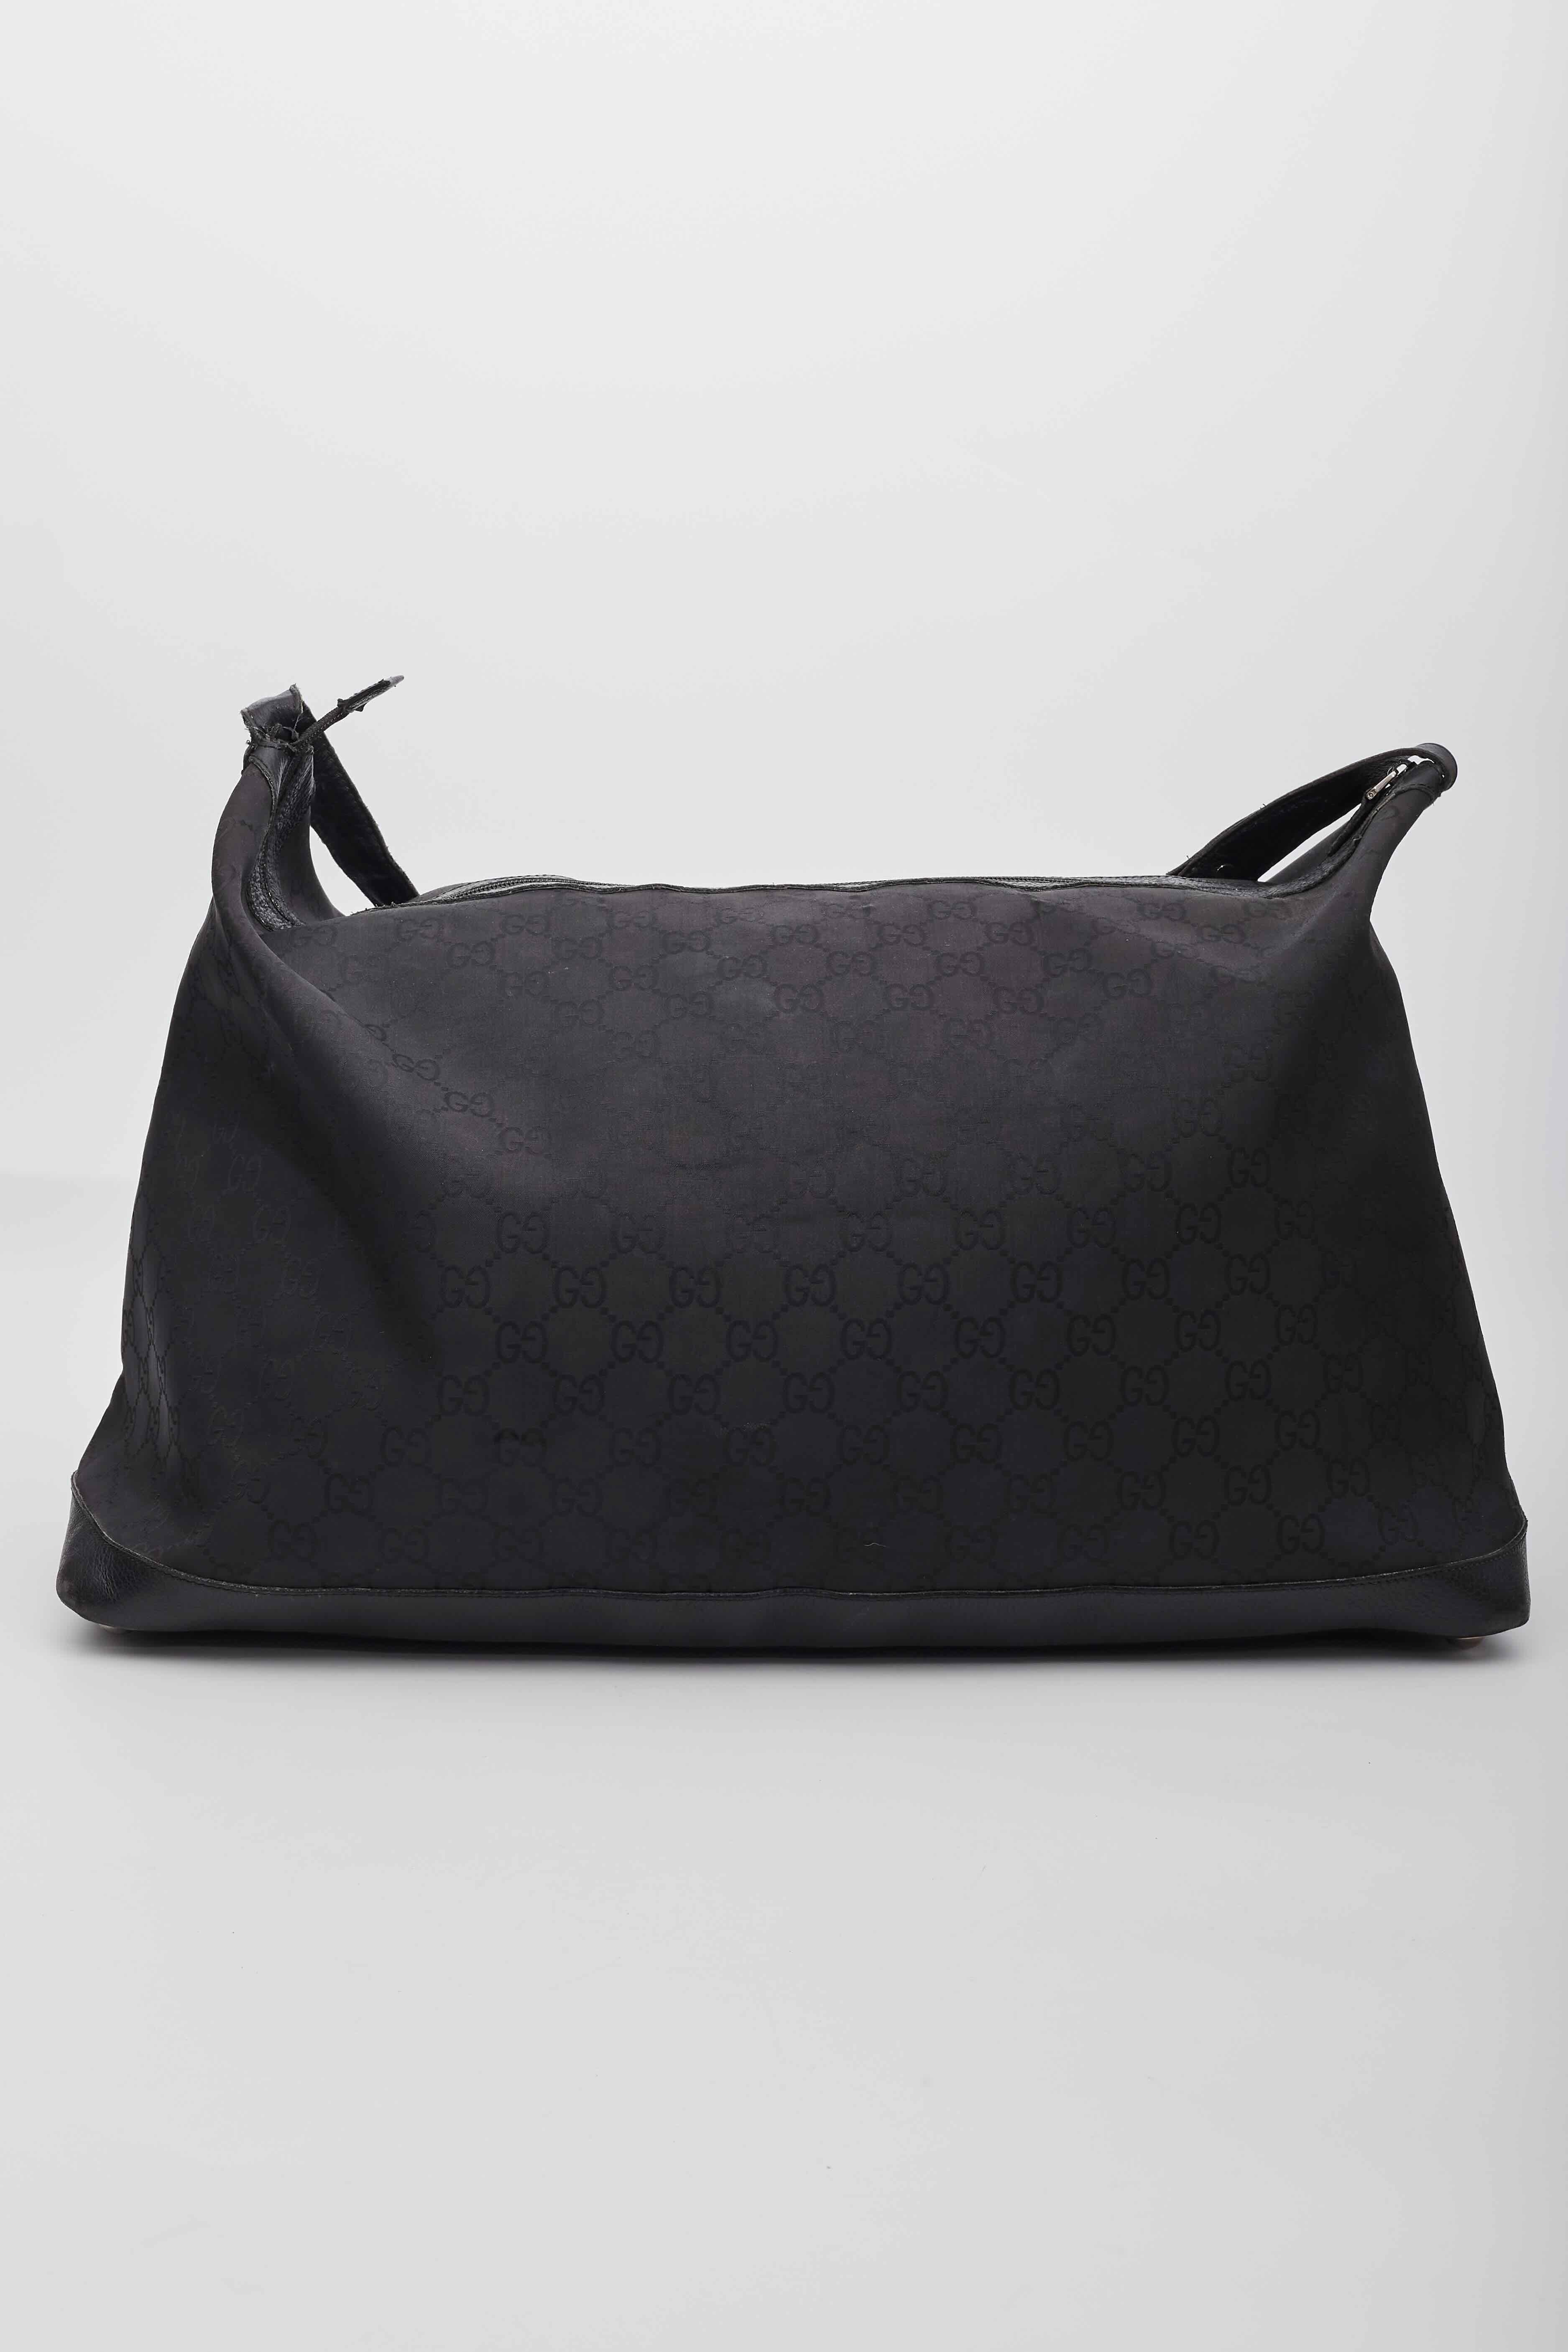 Ce sac de voyage est confectionné en toile noire portant le monogramme GG de Gucci. Le sac est doté d'une sangle transversale en cuir avec des maillons en argent poli et une boucle d'ajustement avec une garniture en cuir autour du sac pour en